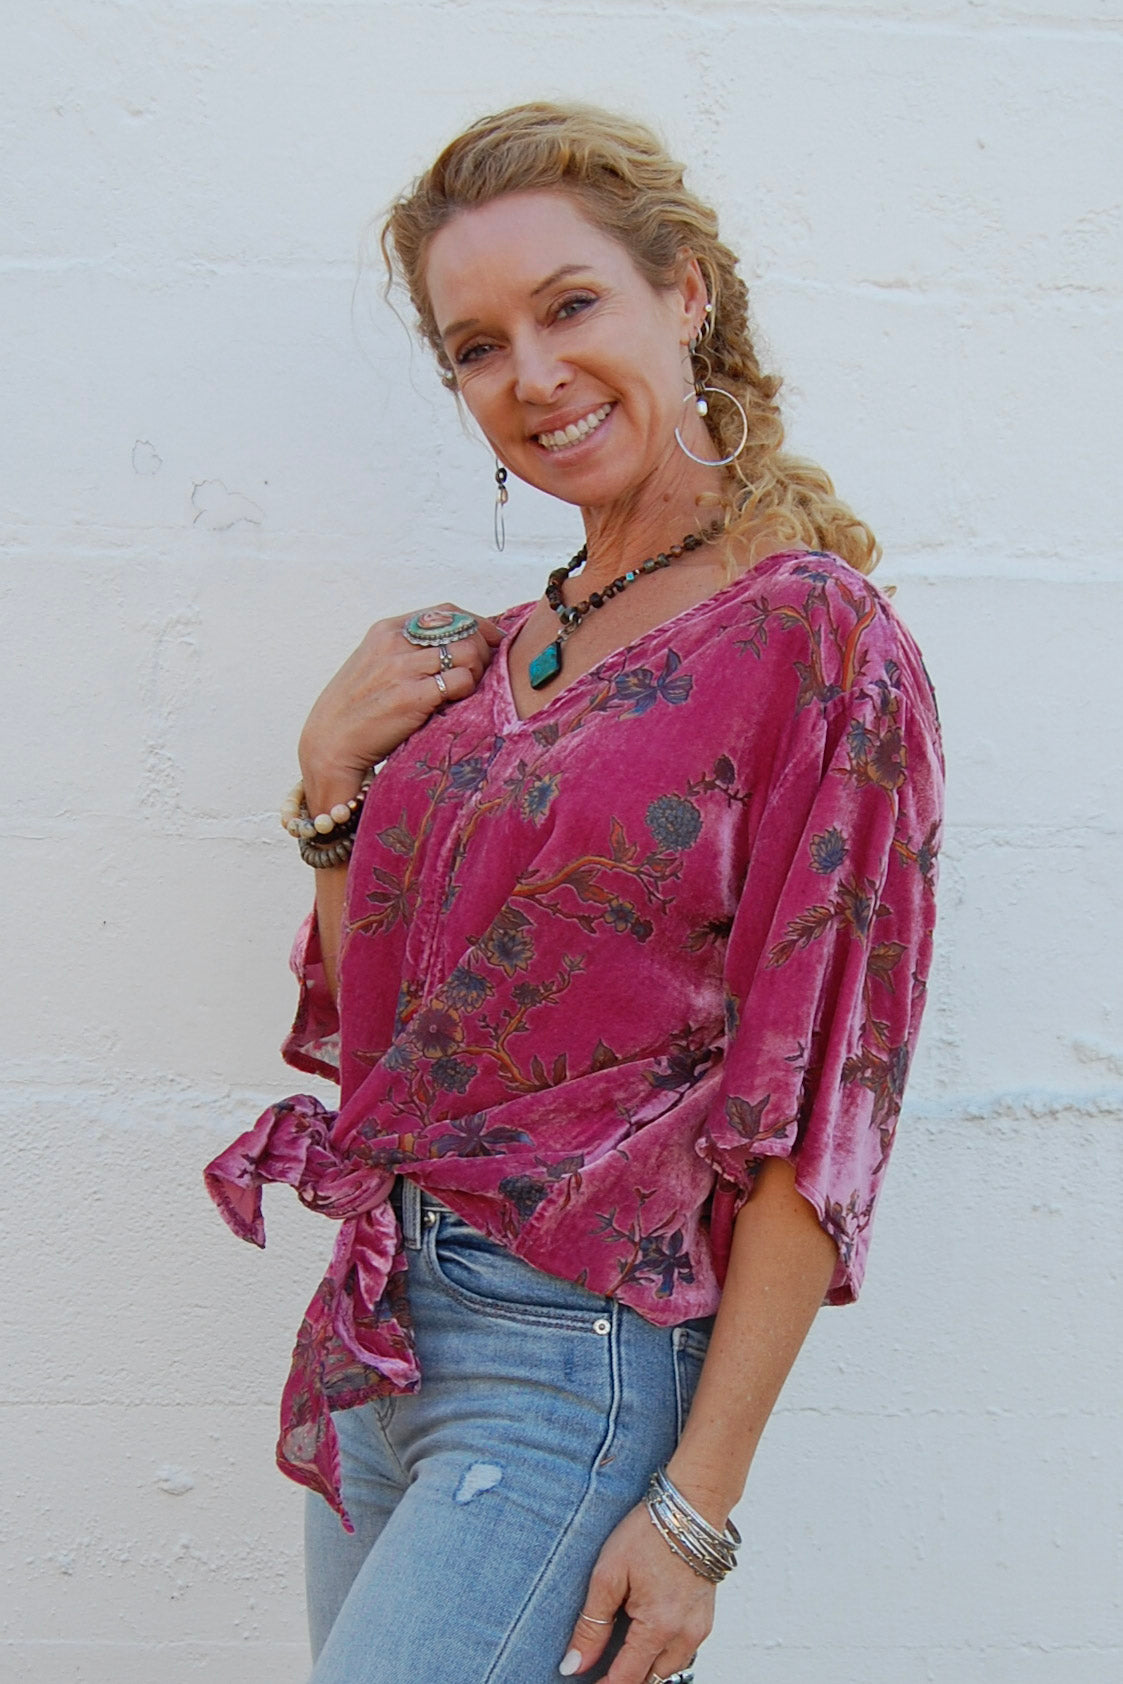 Hallie Burnout Tie Top in Pink - SpiritedBoutiques Boho Hippie Boutique Style Top, BIZ